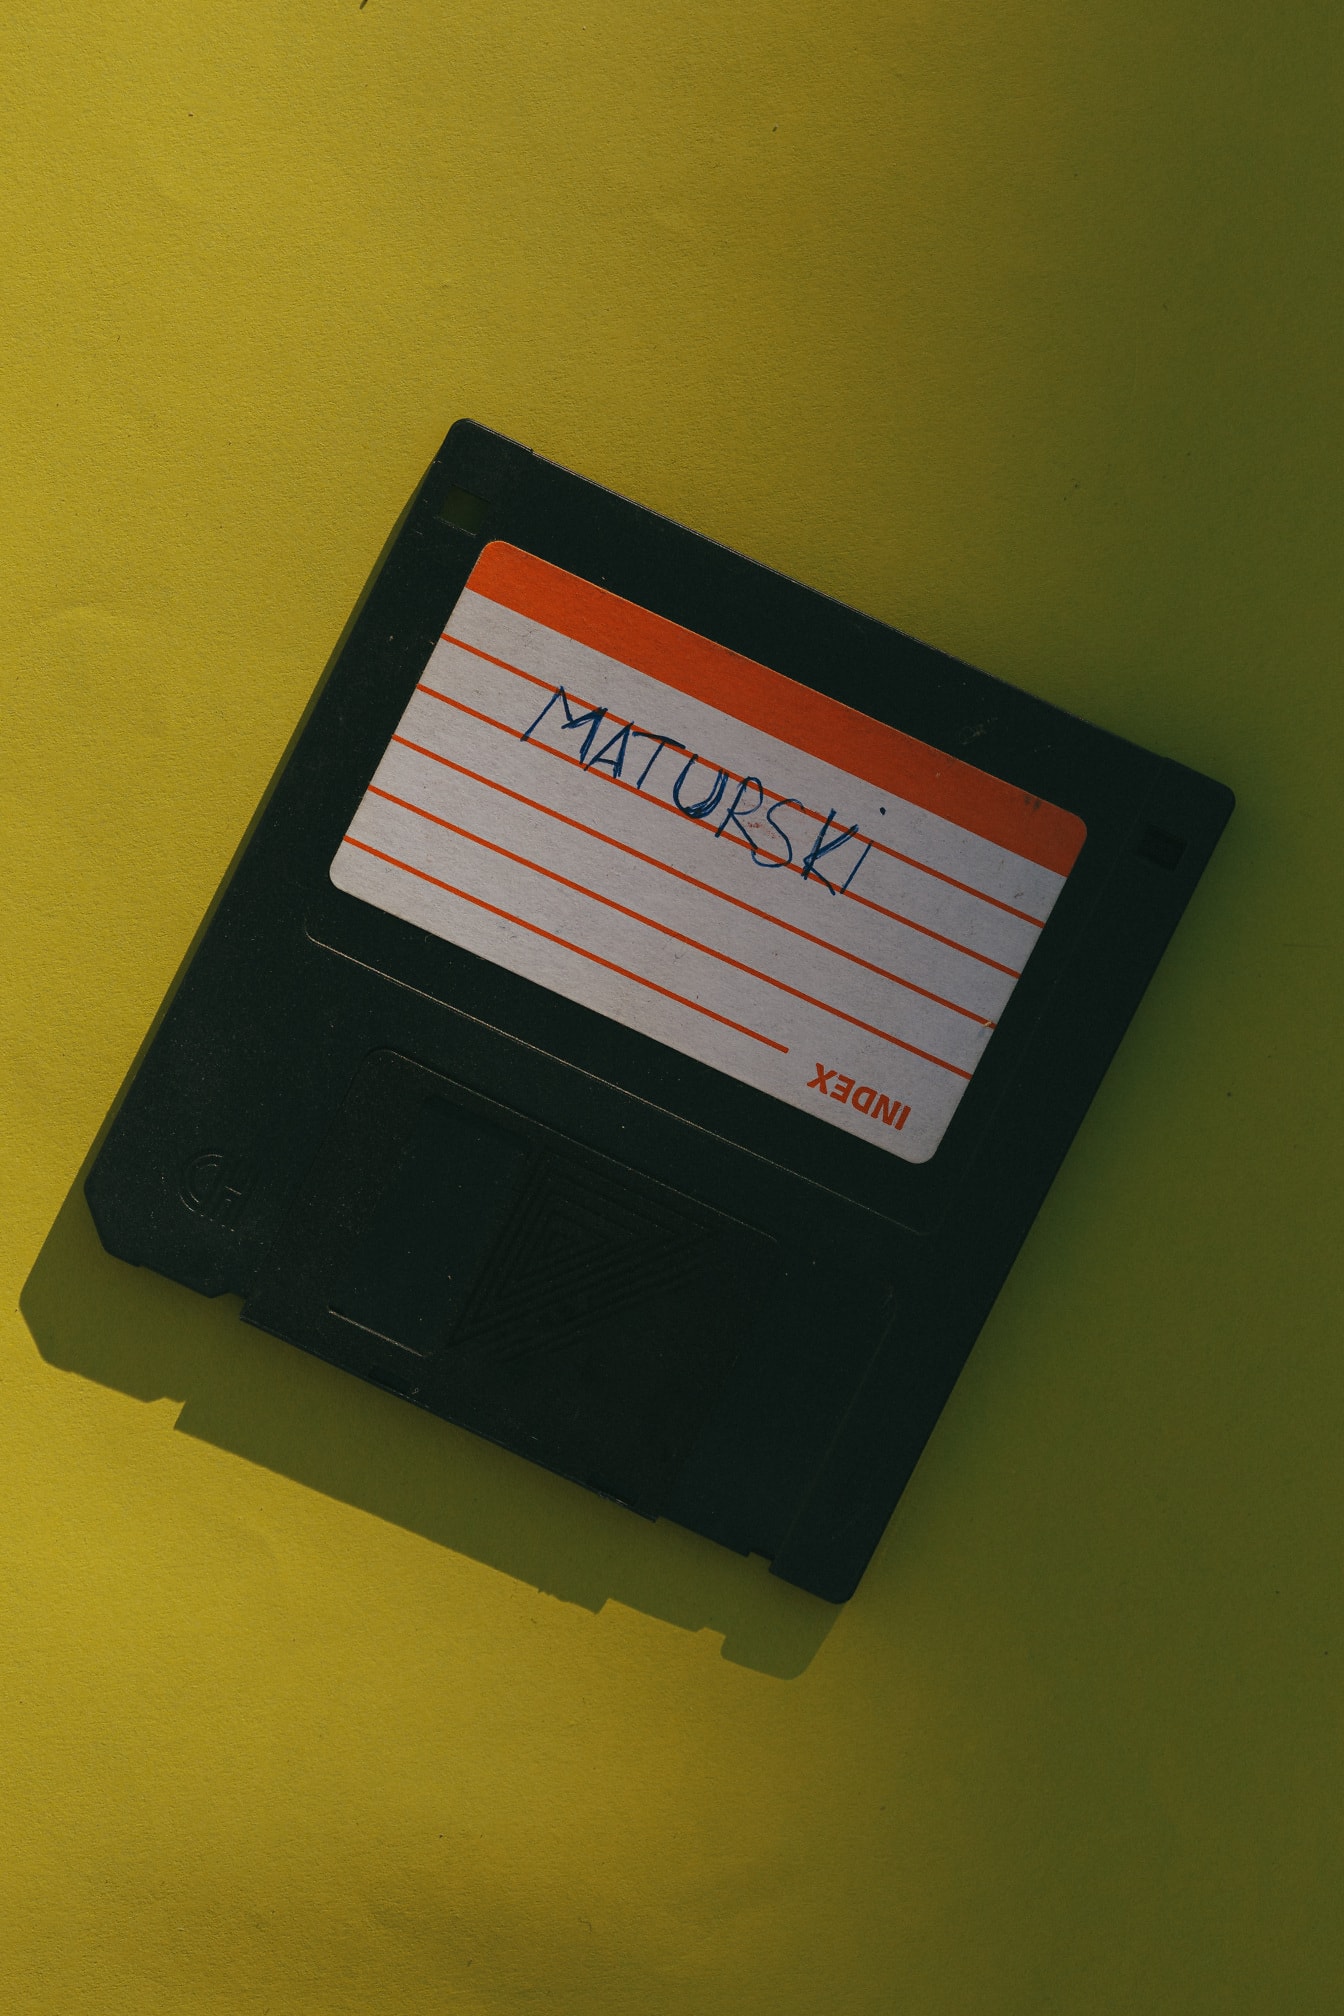 Ouderwetse diskette met label